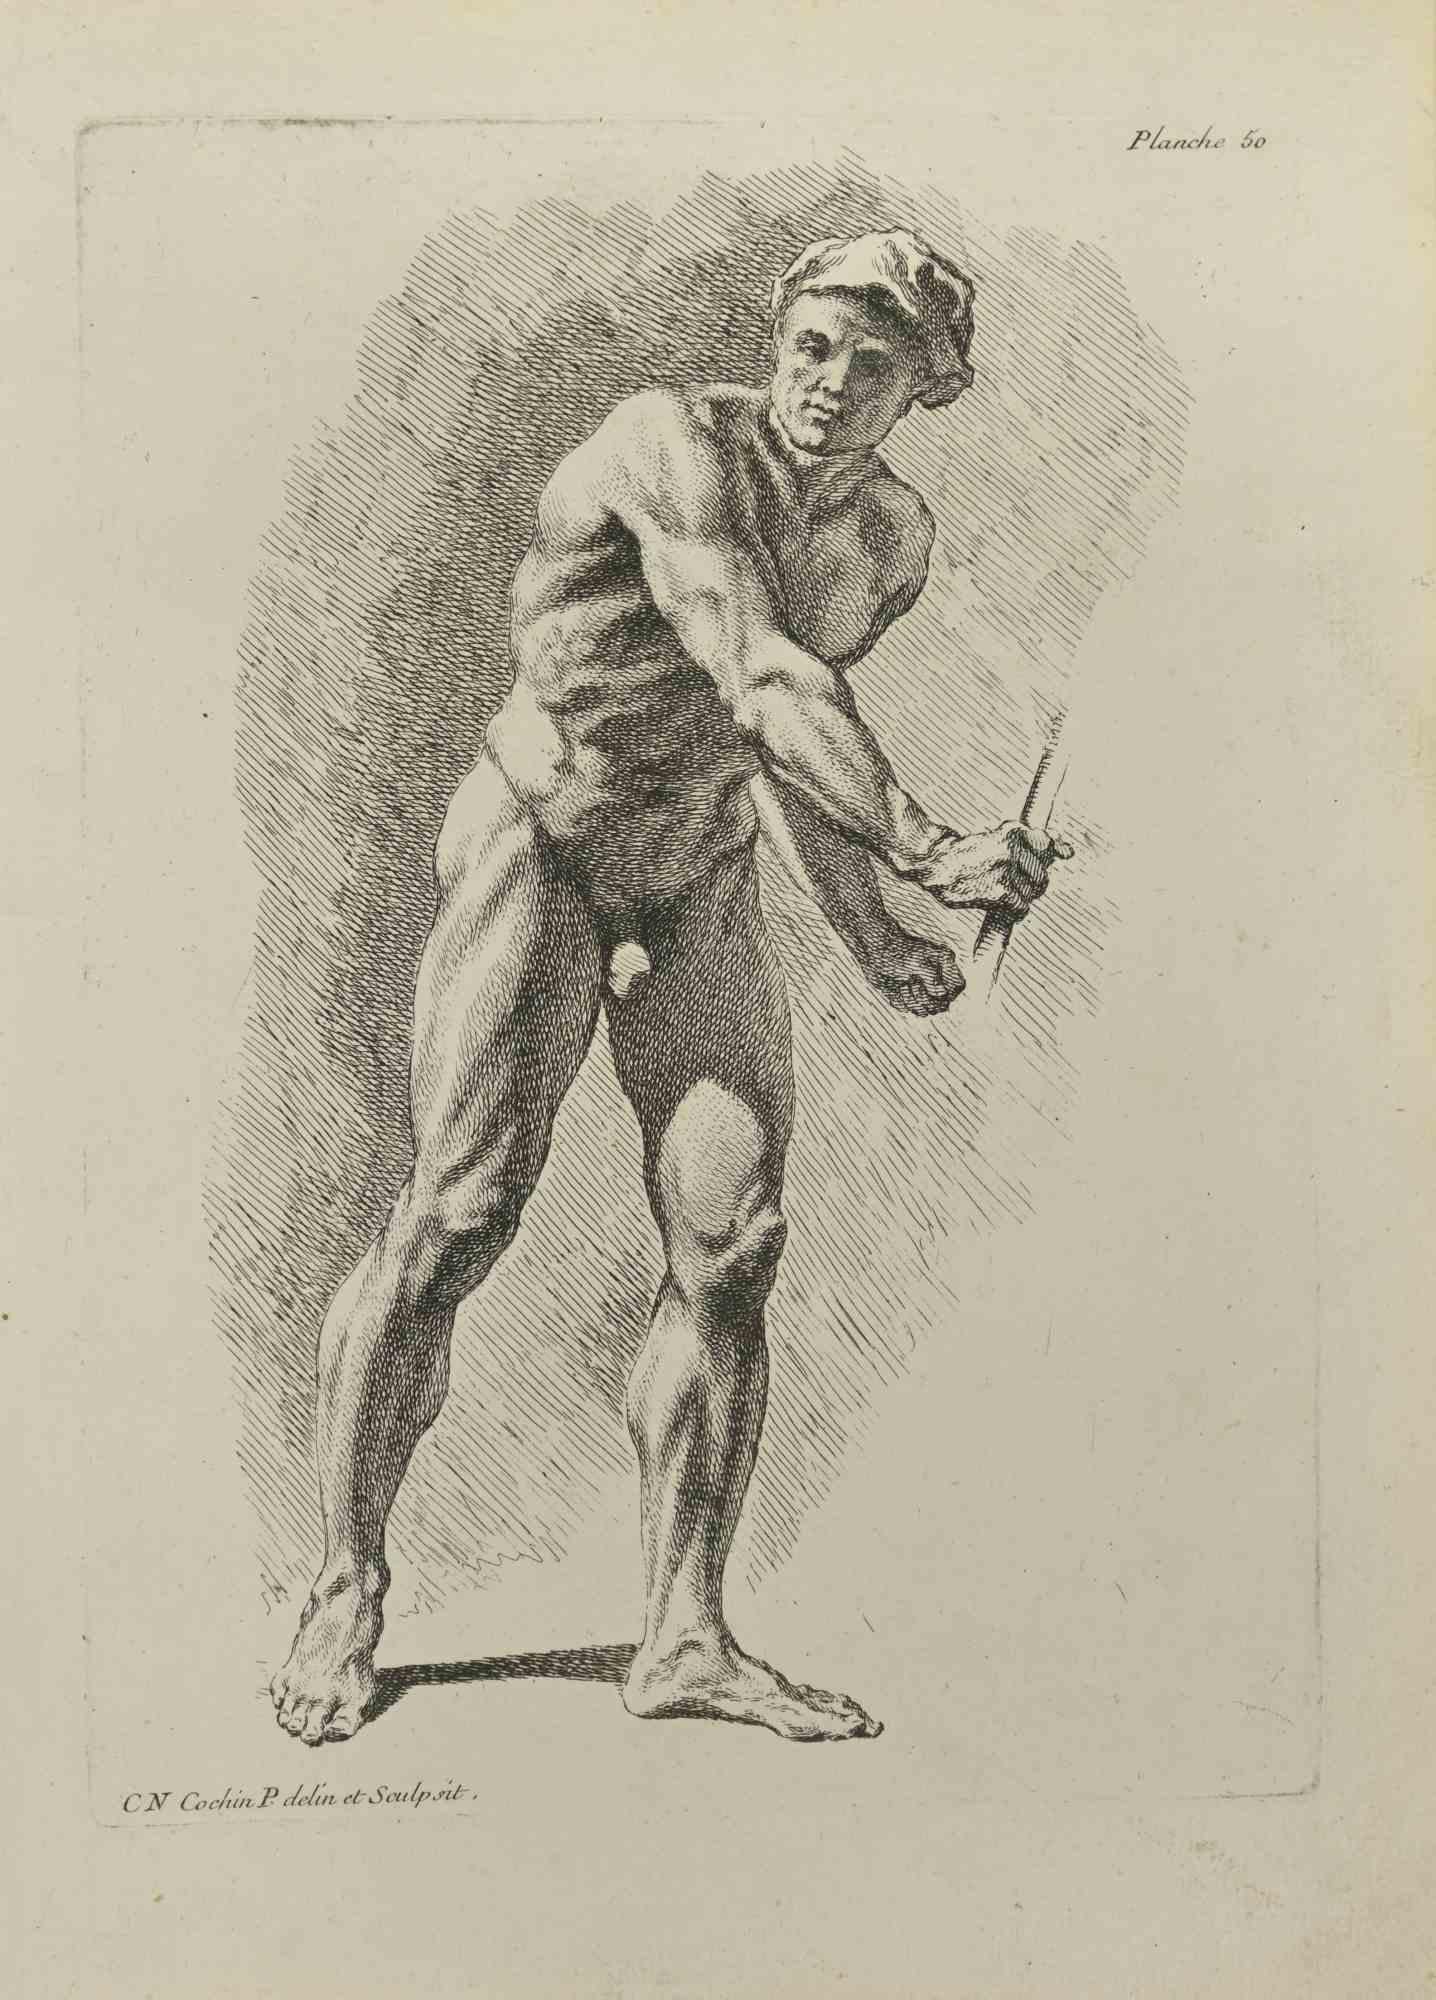 Anatomie-Studien ist eine Radierung von Nicholas Cochin aus dem Jahr 1755.

Guter Zustand mit leichten Stockflecken.

In der Platte signiert.

Das Kunstwerk wird mit sicheren Strichen dargestellt.

Die Radierung wurde für die Anatomie-Studie